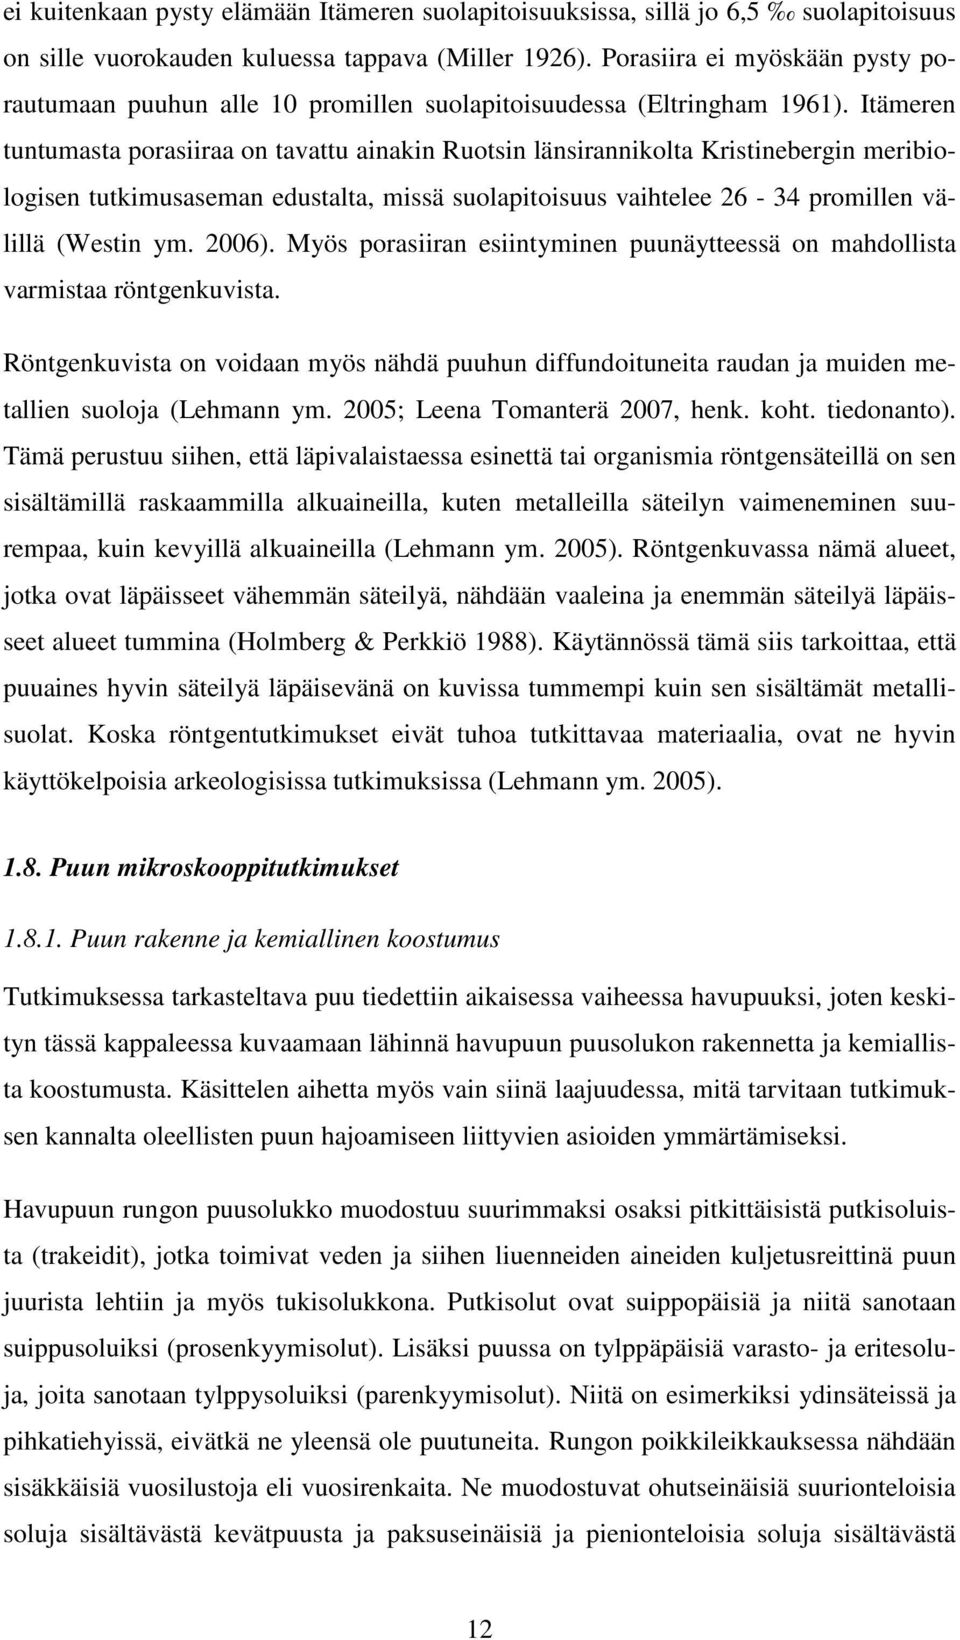 Itämeren tuntumasta porasiiraa on tavattu ainakin Ruotsin länsirannikolta Kristinebergin meribiologisen tutkimusaseman edustalta, missä suolapitoisuus vaihtelee 26-34 promillen välillä (Westin ym.